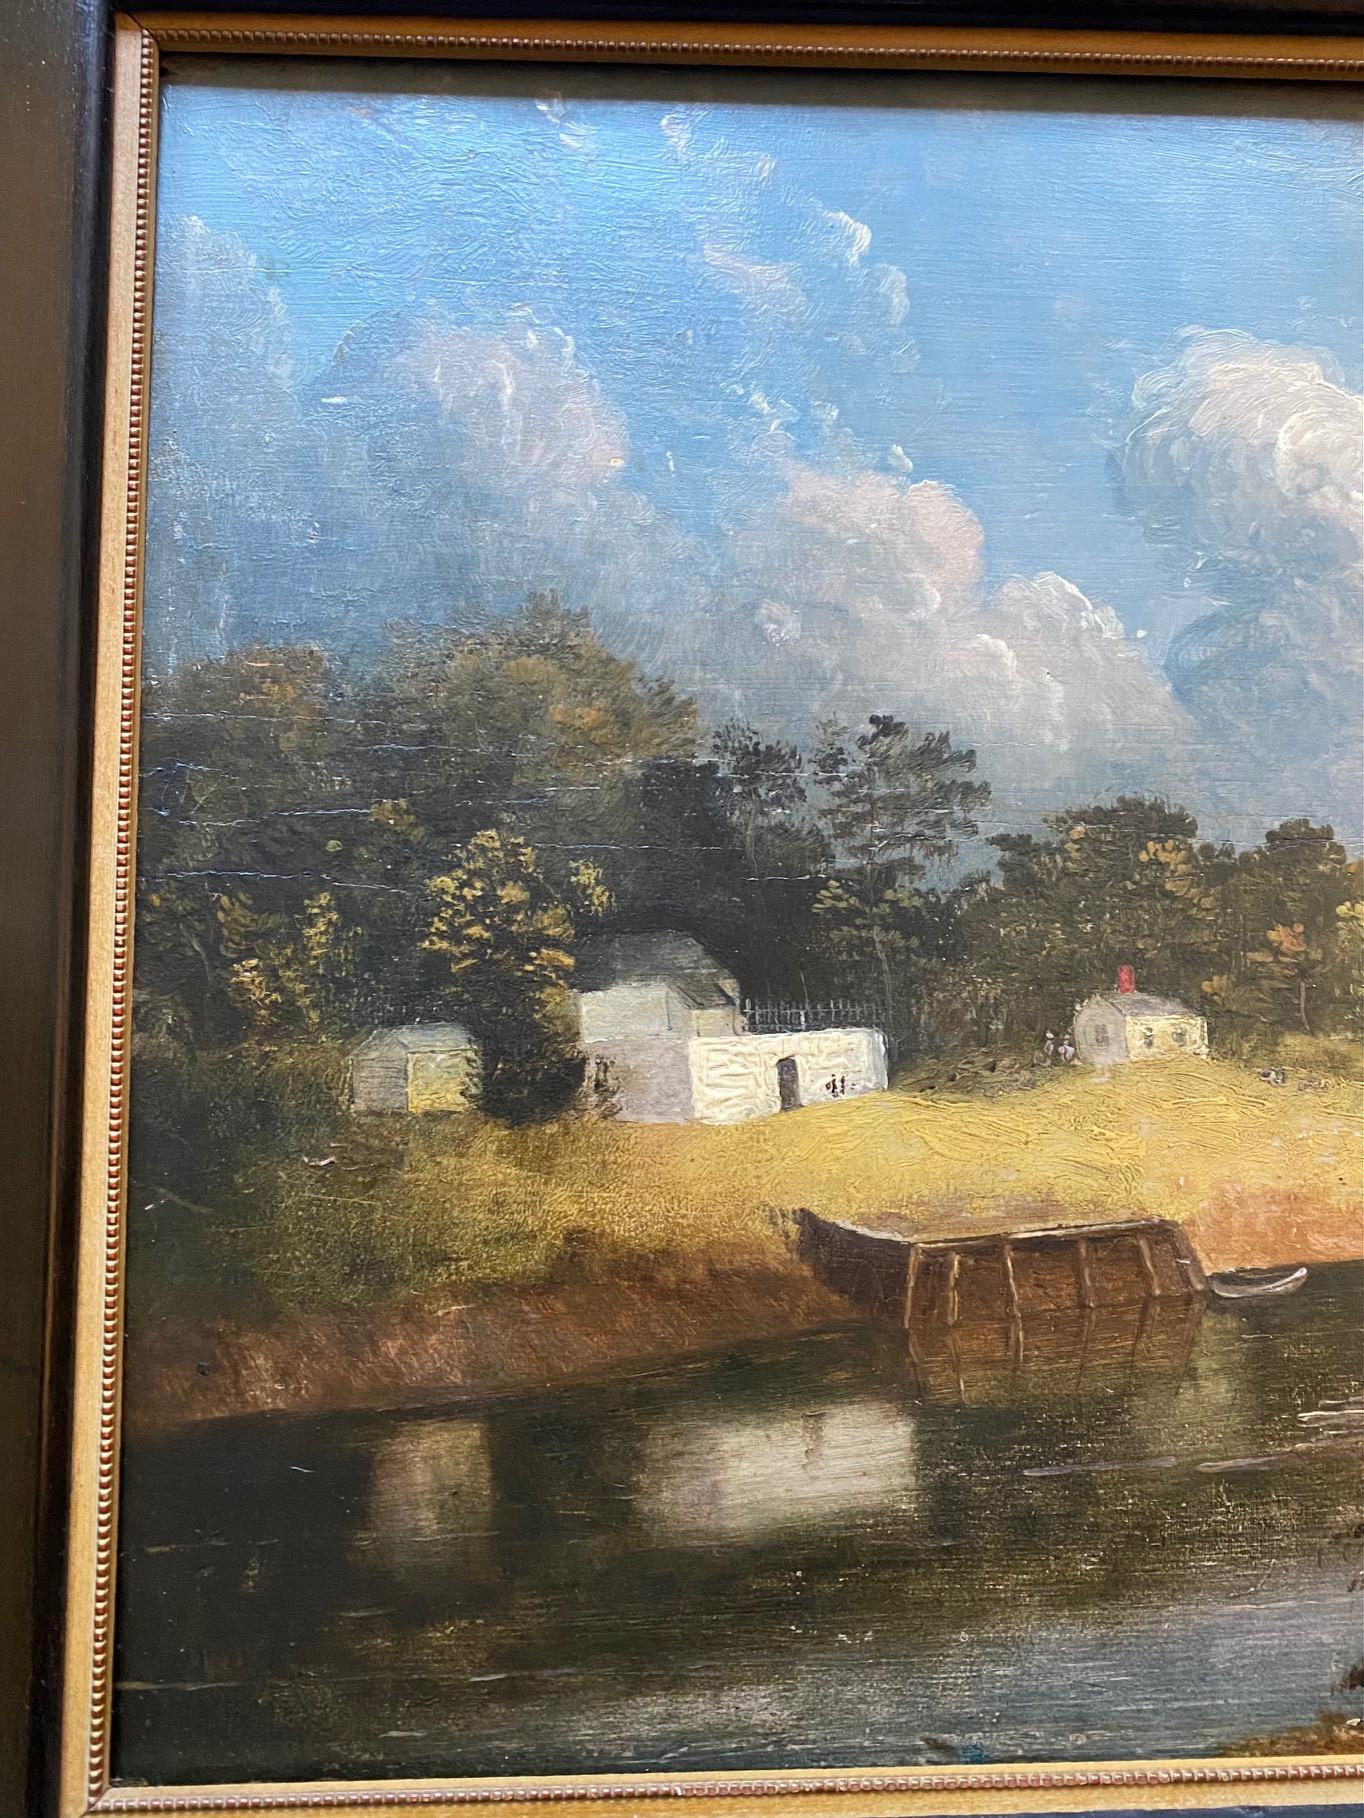 Peinture de paysage de Boston du début du XIXe siècle, signée et datée par l'artiste bostonien J. Wolcott, 18_9, une peinture de paysage à l'huile sur panneau représentant une rivière serpentant à travers une campagne rurale, avec une inscription